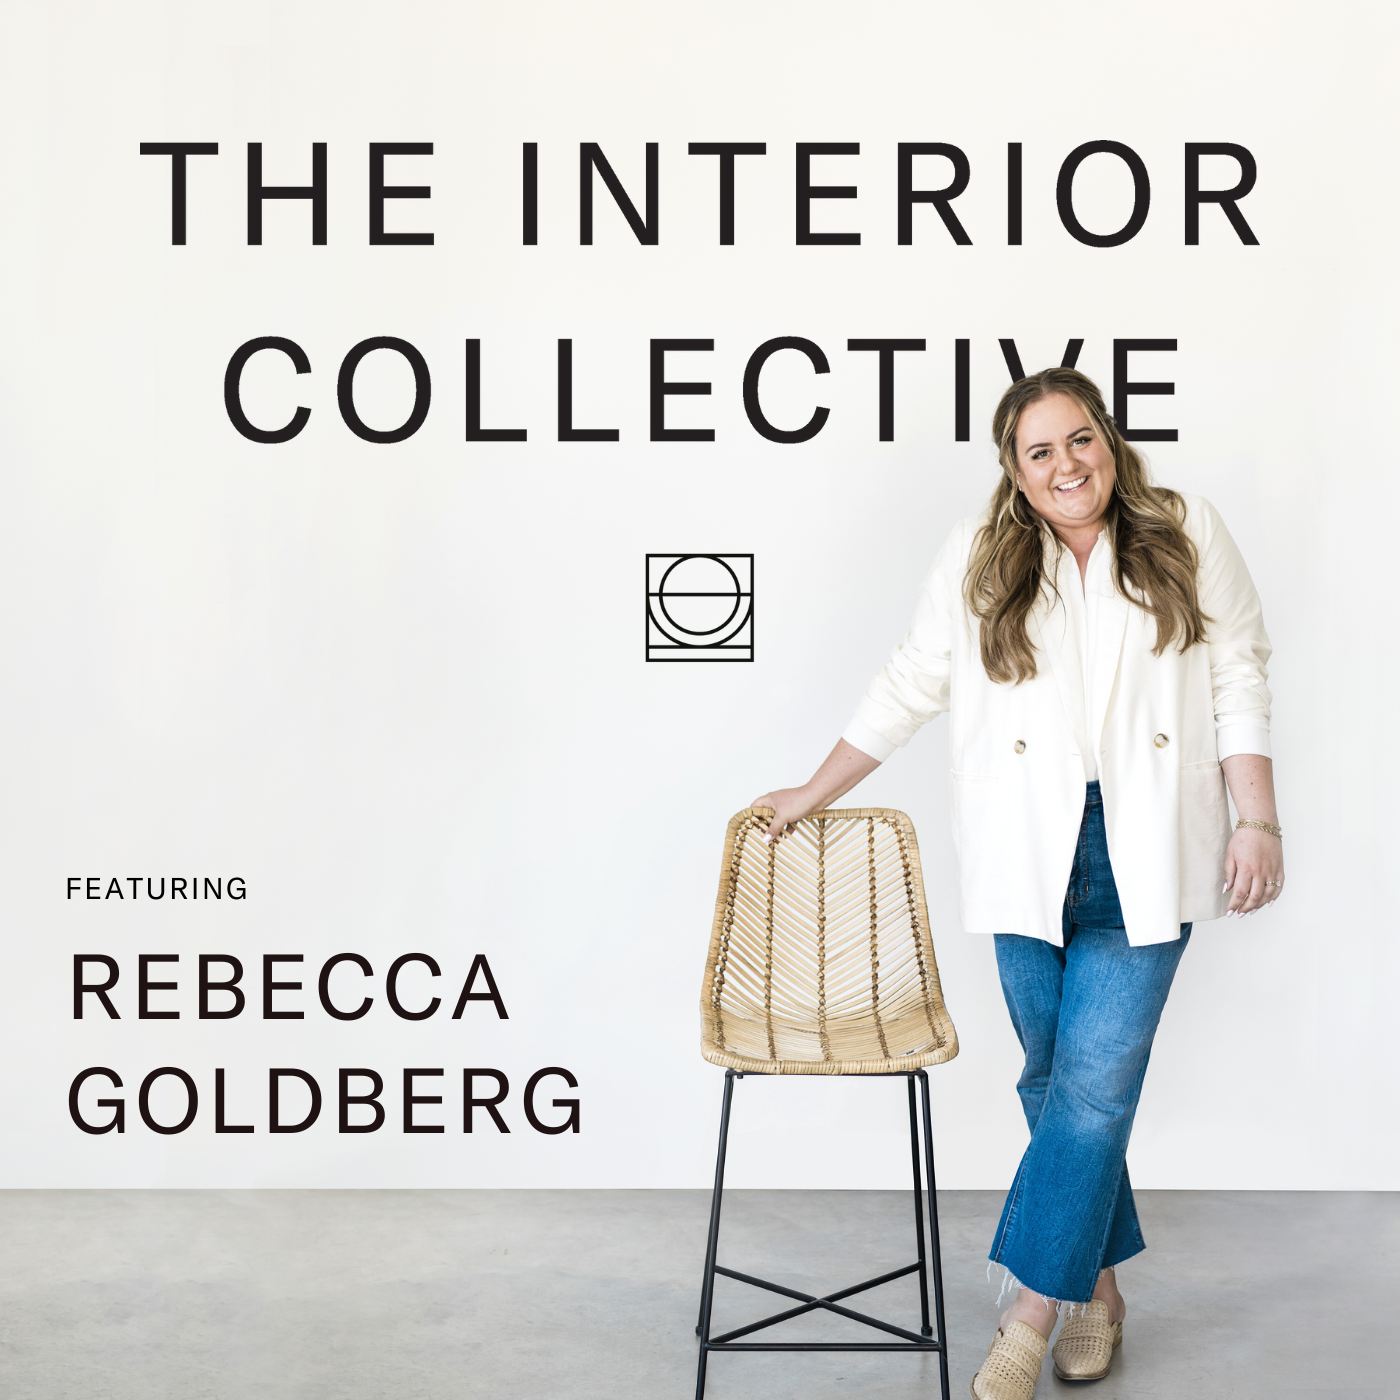 Rebecca Goldberg: The Future of PR & Marketing for Interior Designers